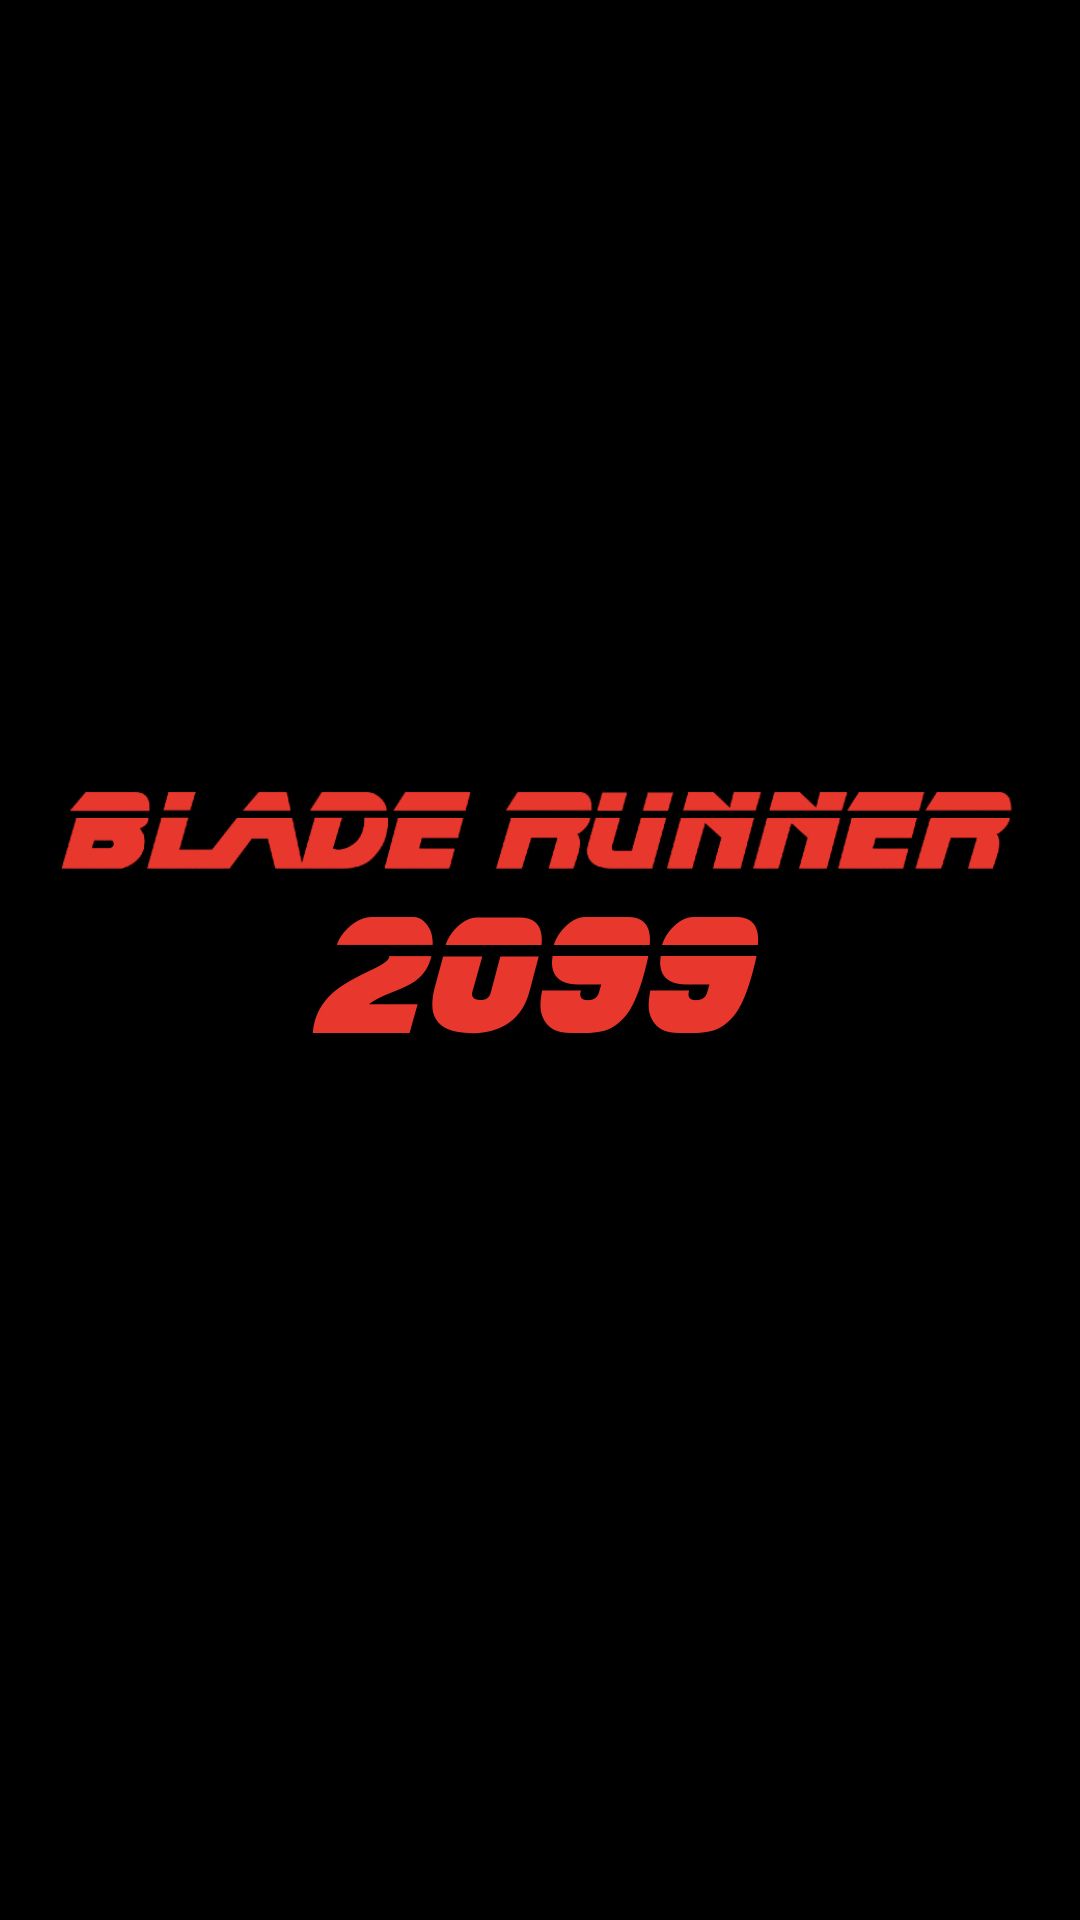 Blade Runner 2099 Logo